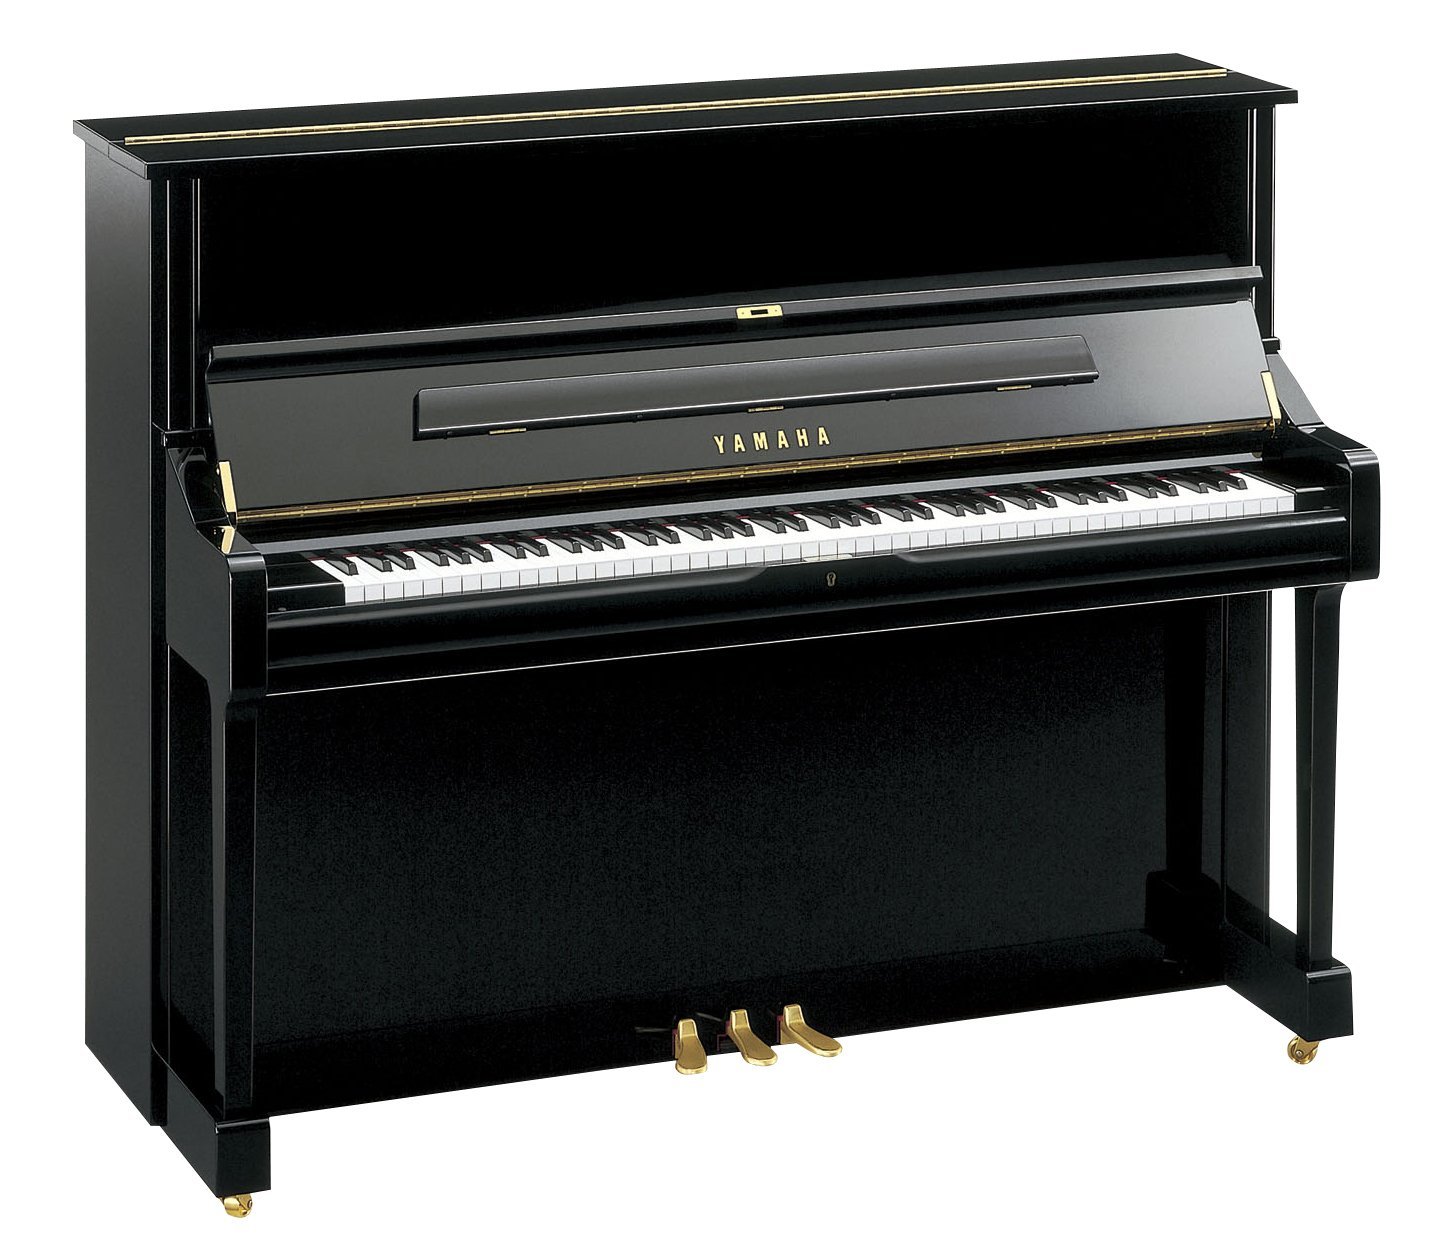 Small black upright piano.